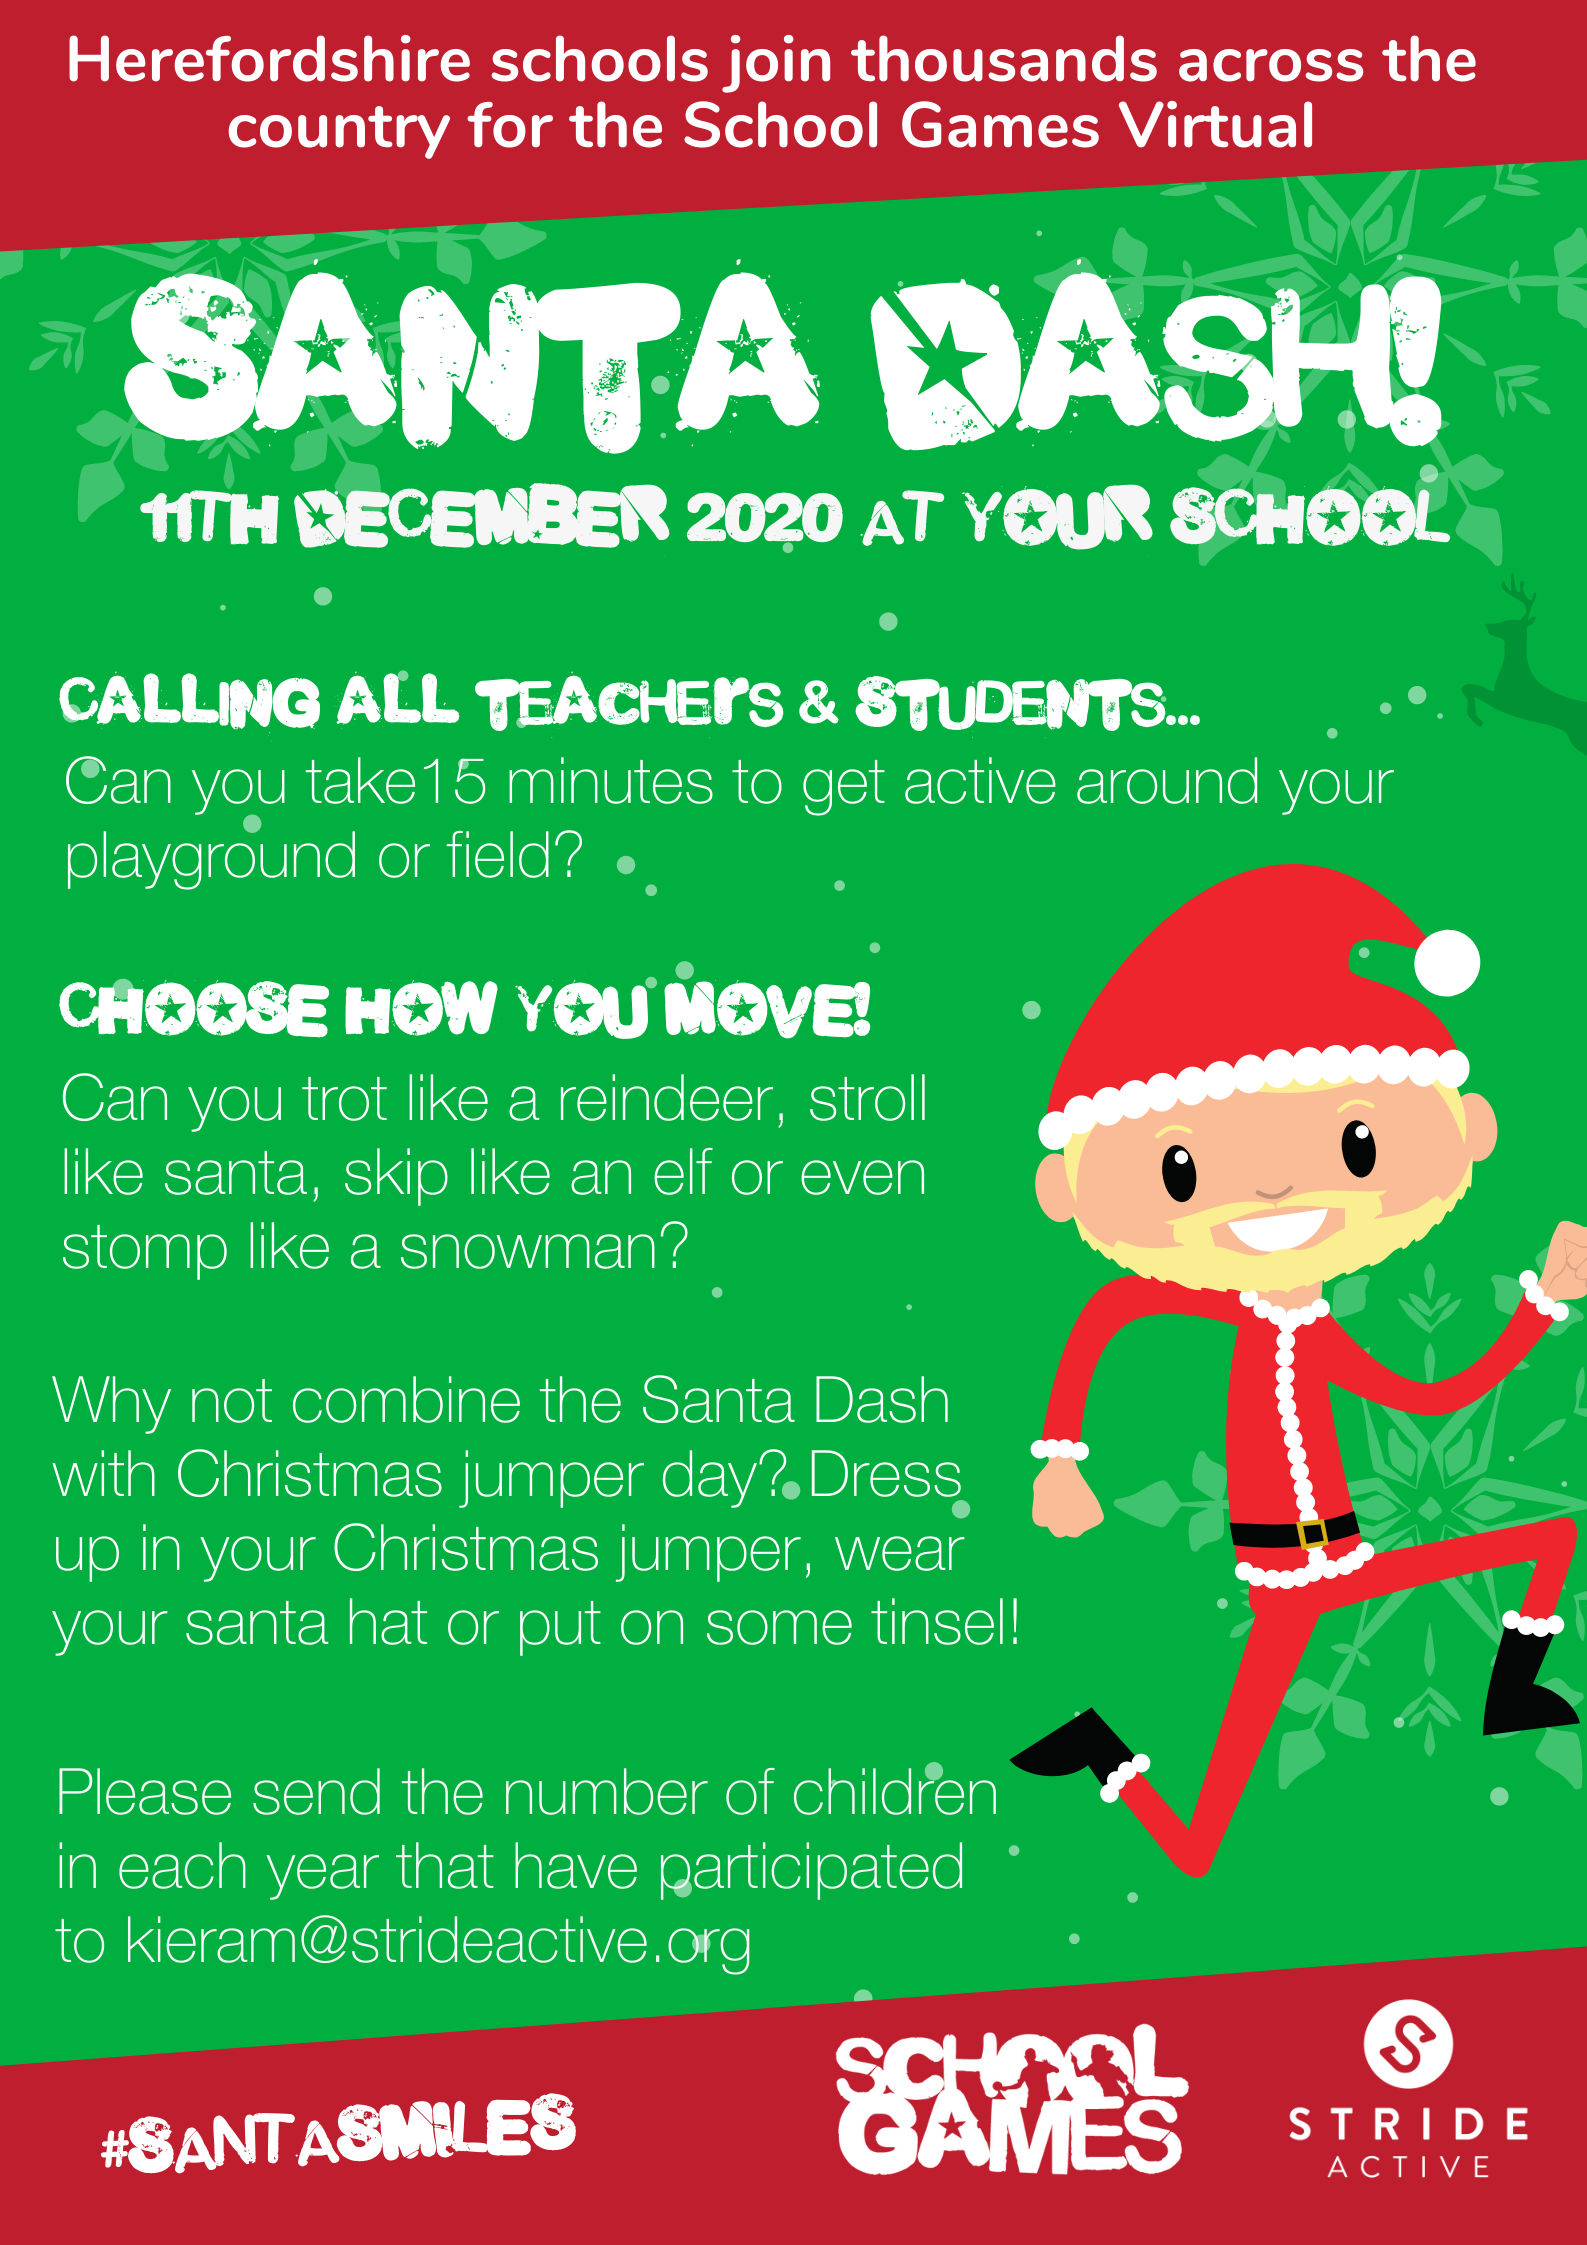 Santa Dash! Stride Active